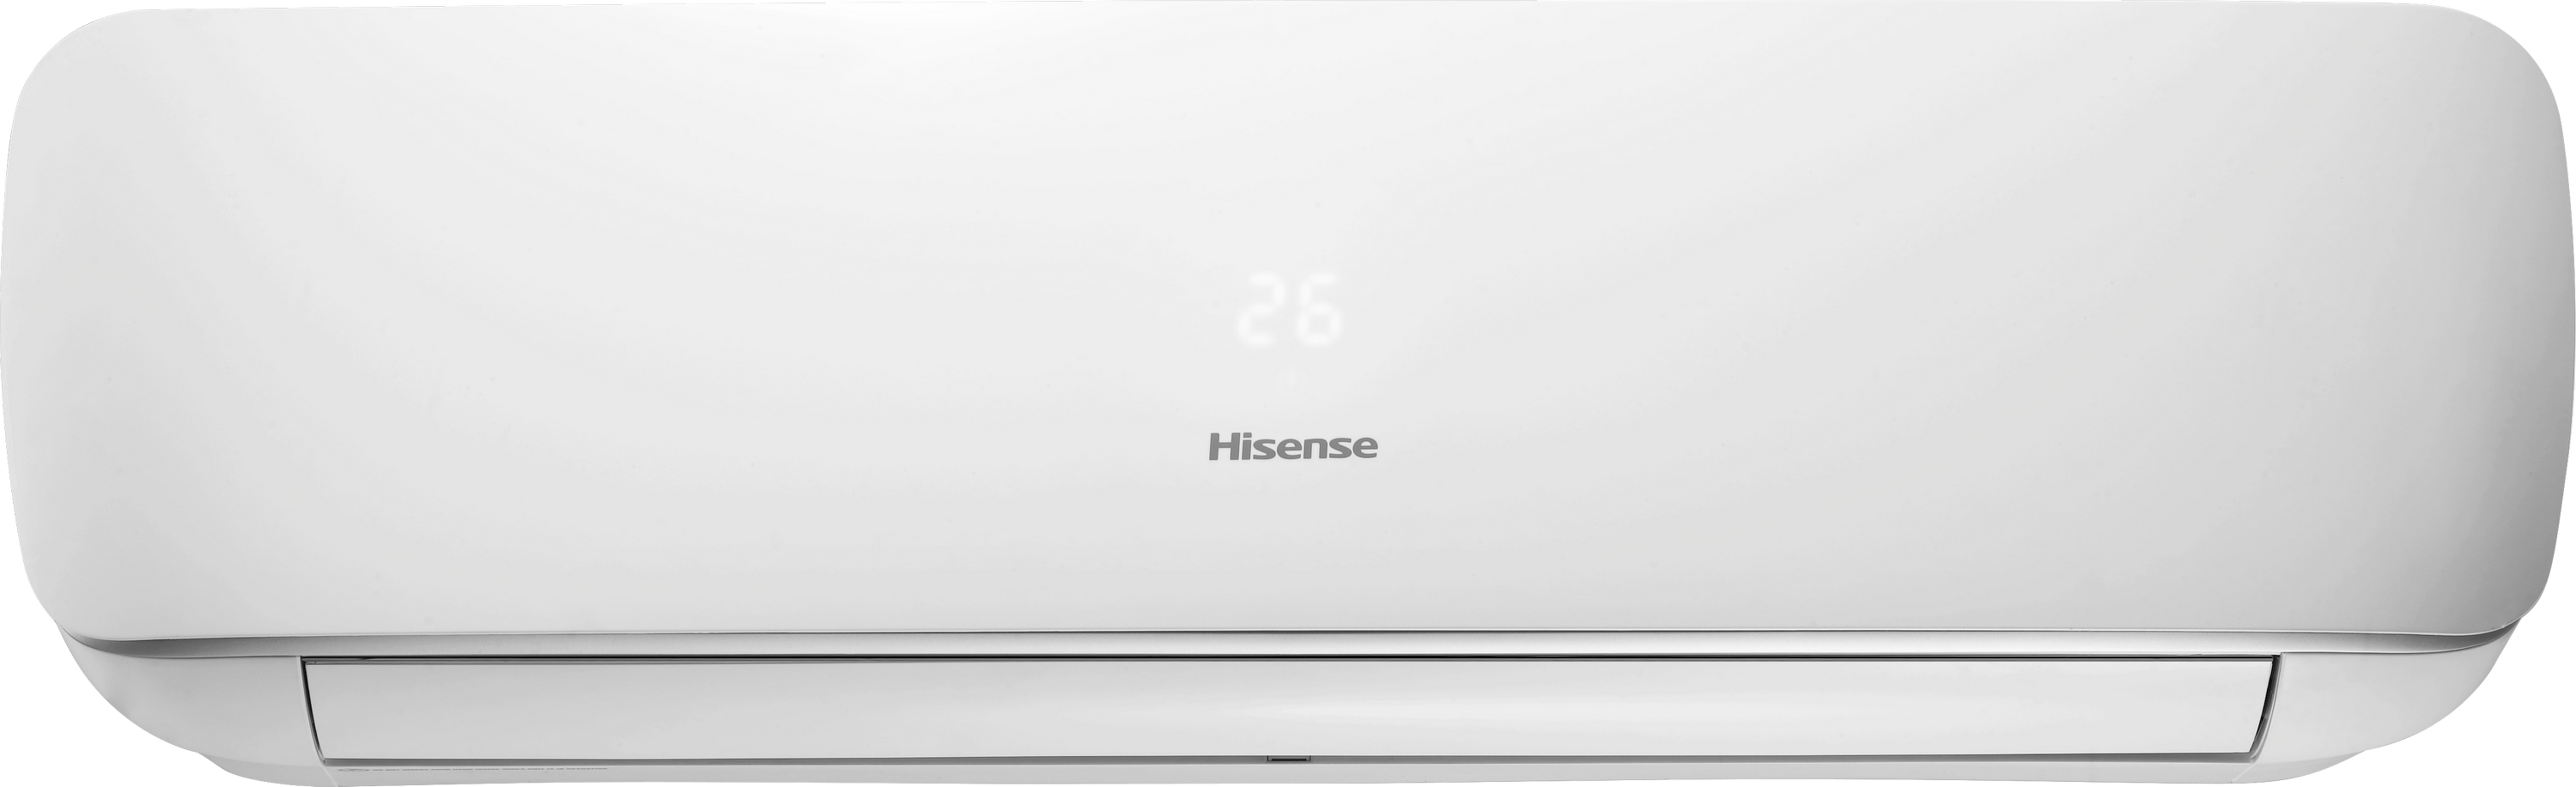 Внутренний блок мультисплит-системы Hisense Apple Pie AST-18UW4SXATG07G цена 0.00 грн - фотография 2